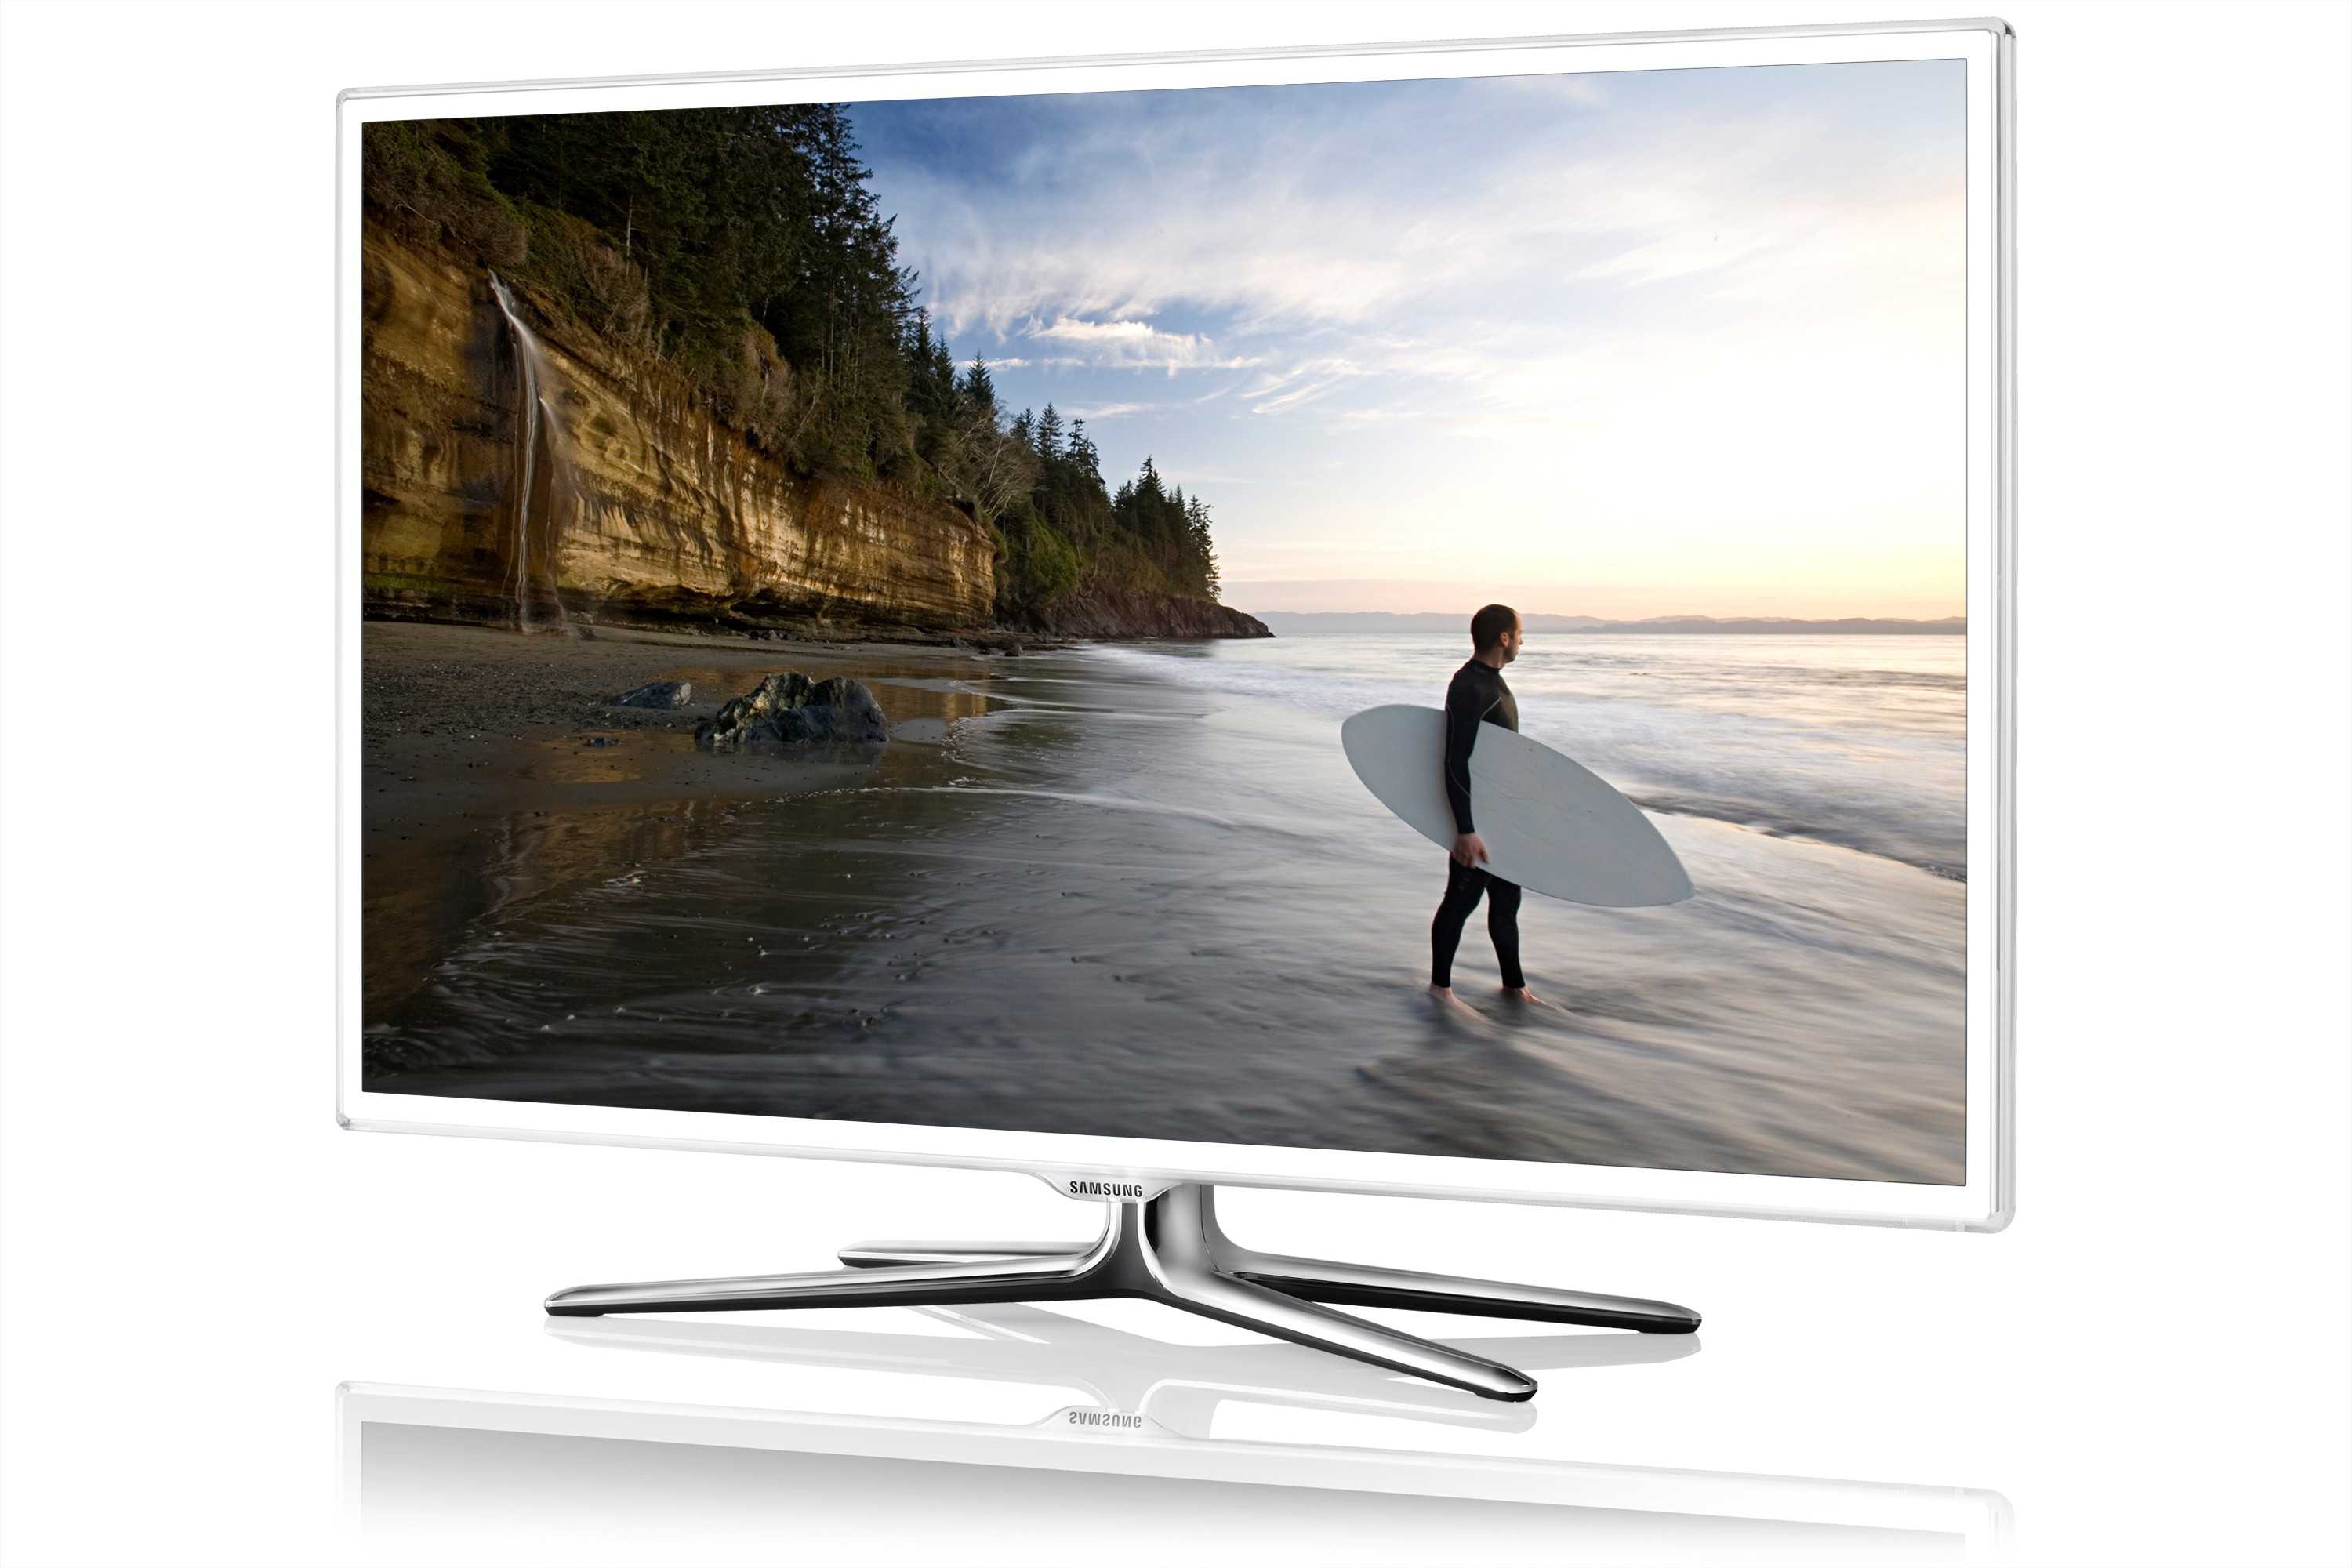 Жк телевизор 40" samsung ue40es6757m — купить, цена и характеристики, отзывы